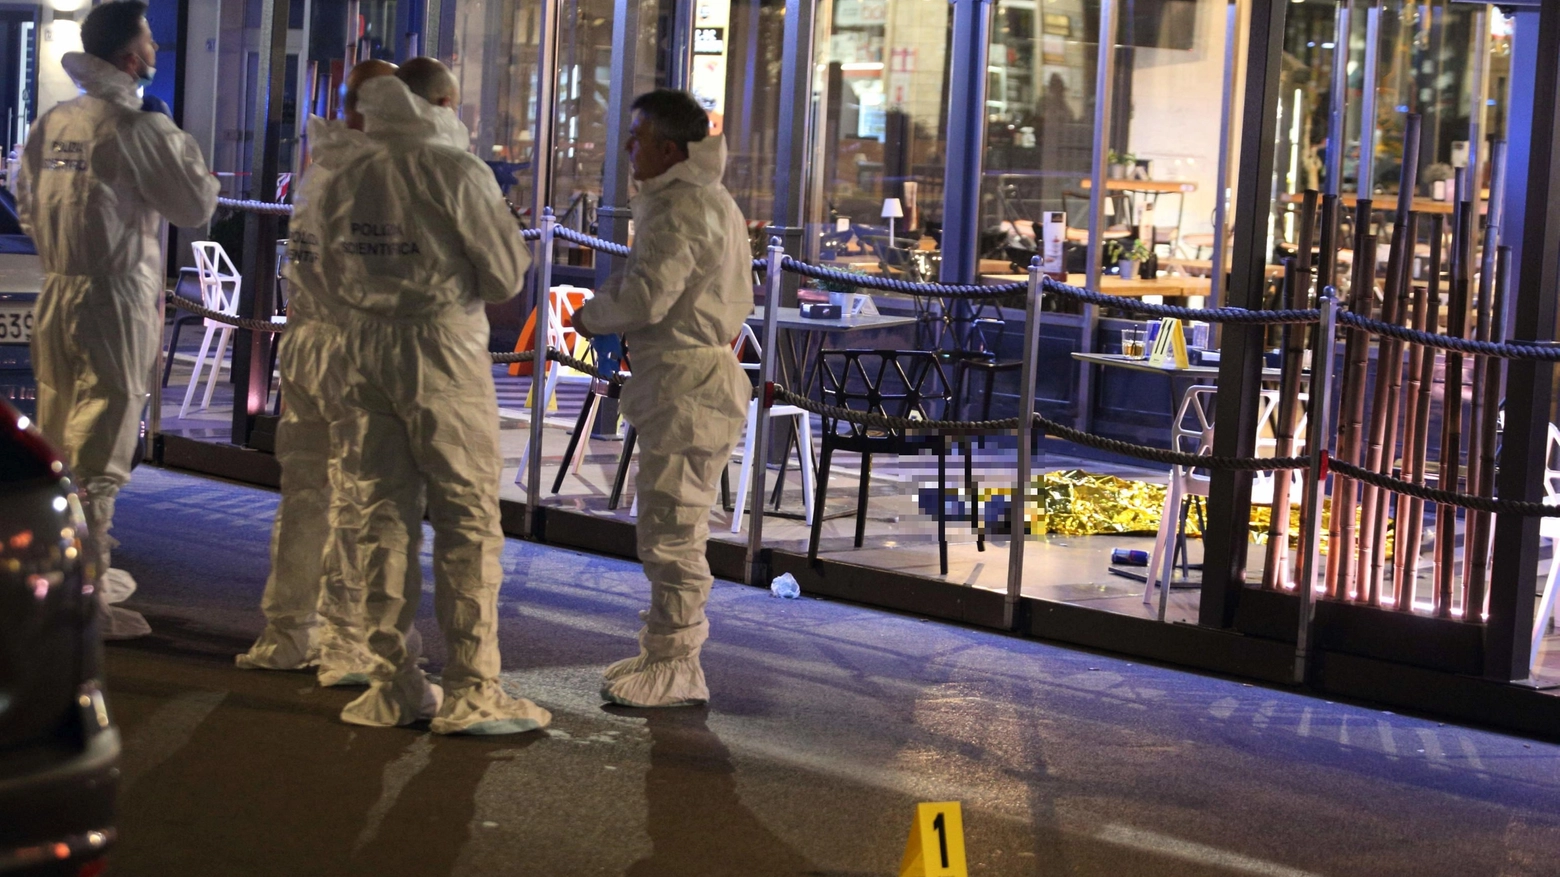 Sparatoria in un bar nel centro di Frosinone: due morti e 2 feriti